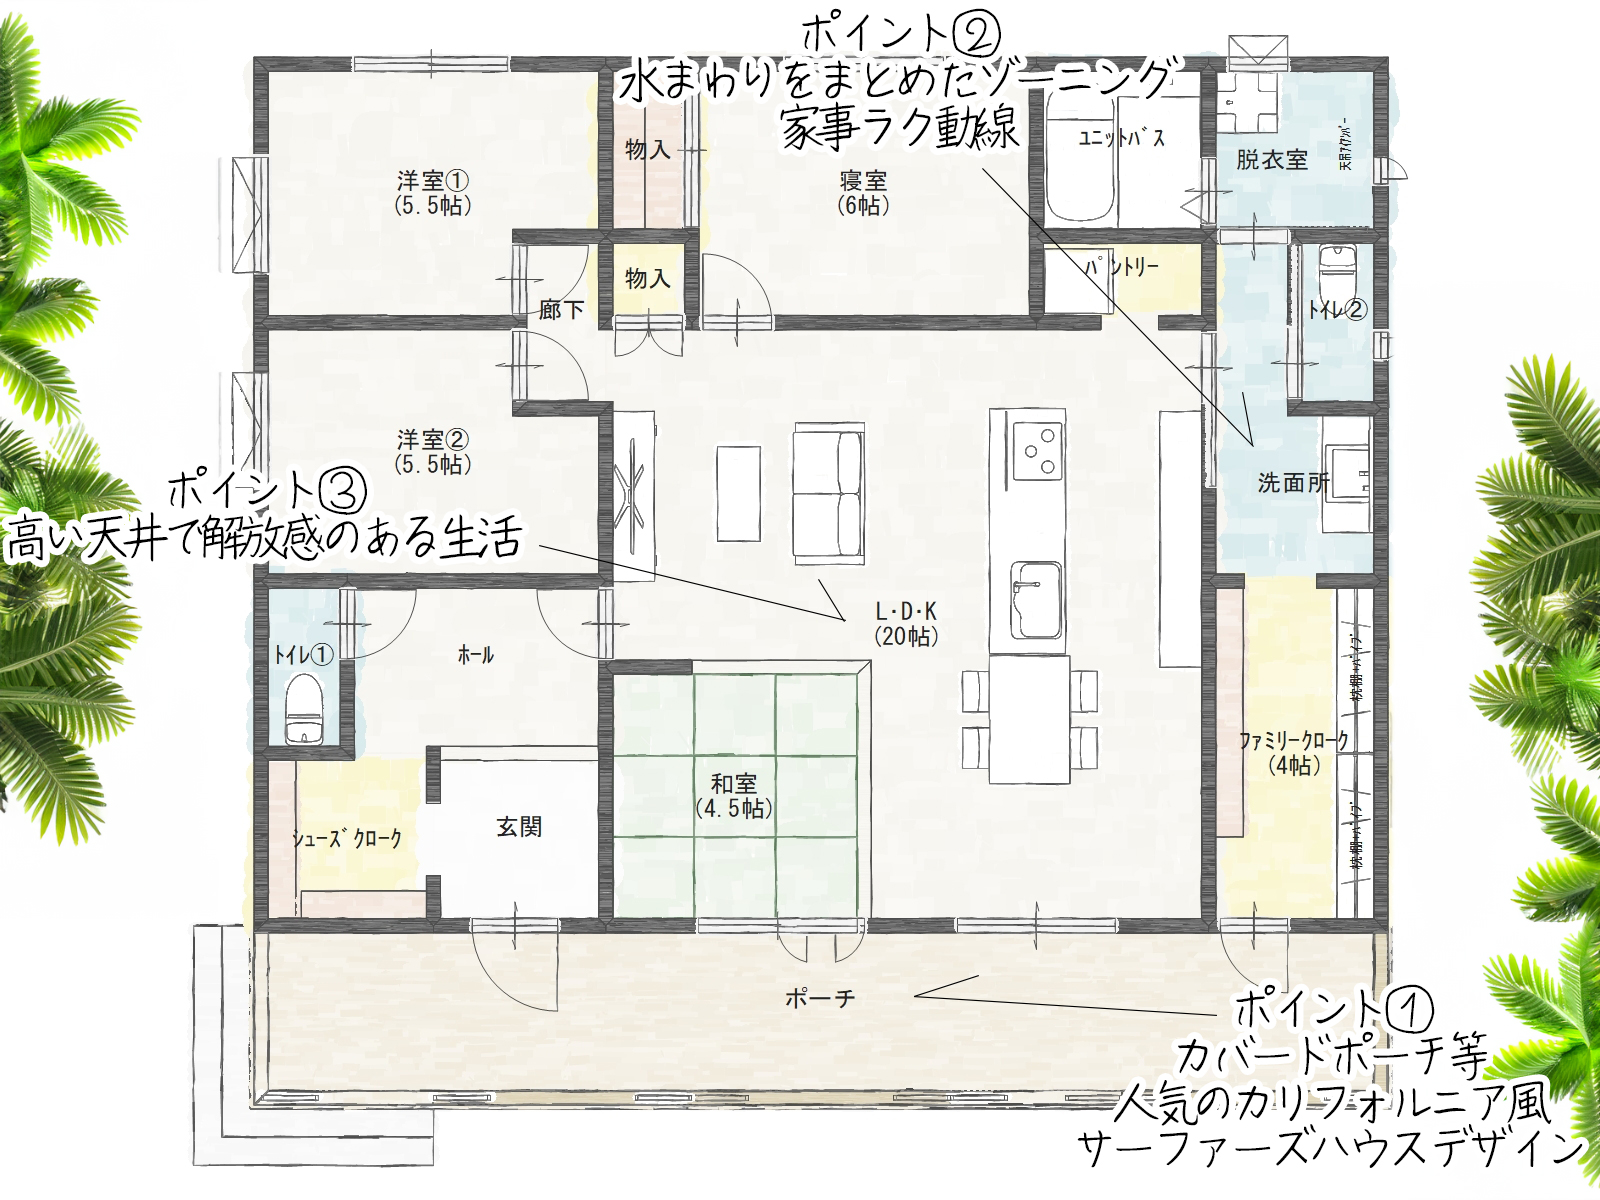 鉾田市のタイルデッキがスタイリッシュな 32.5坪サーファーズハウスイベント間取り